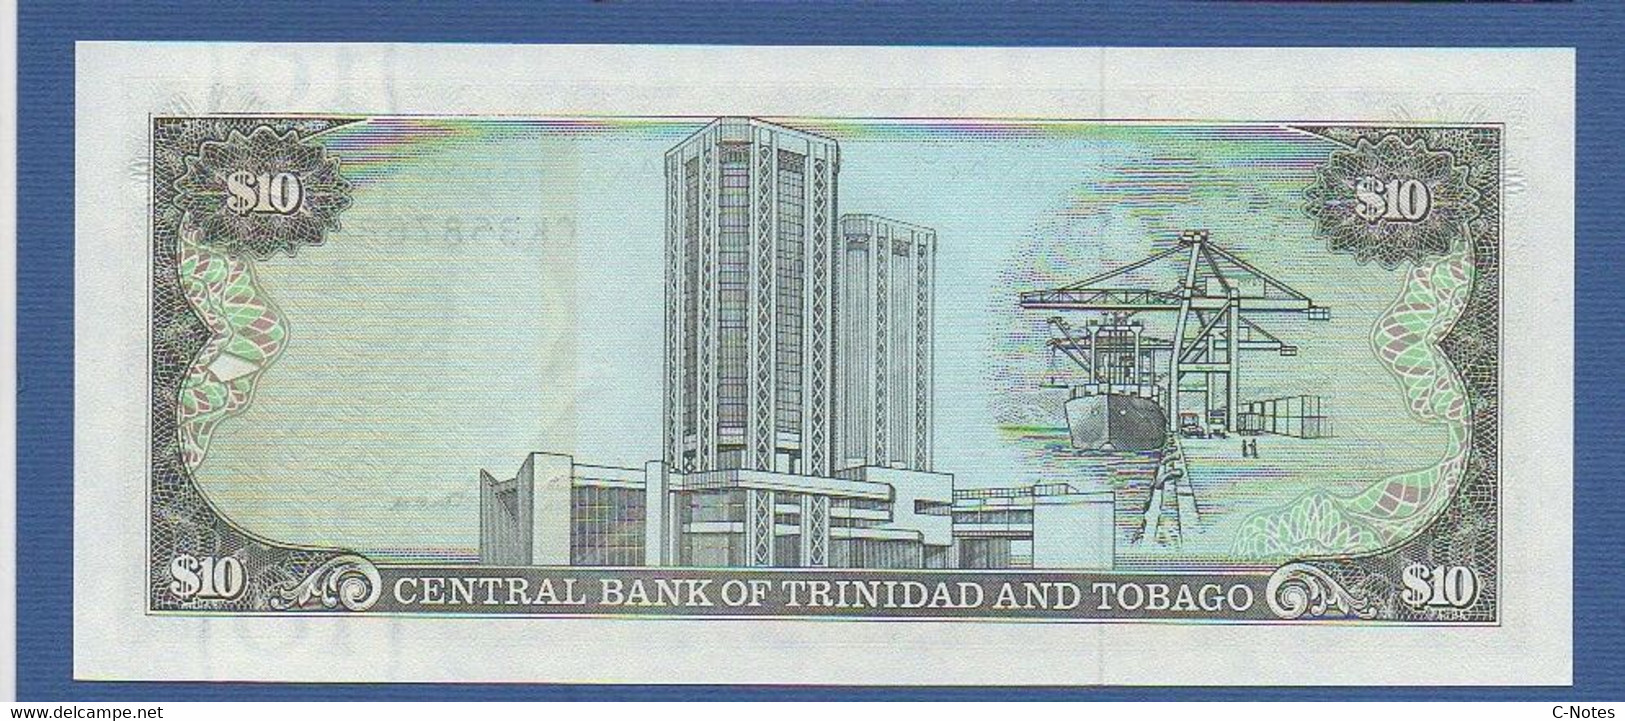 TRINIDAD & TOBAGO - P.38d – 10 Dollars ND (1985) "Chap. 79.02 - Arms" Issue, UNC, Serie CK 358768 - Trindad & Tobago